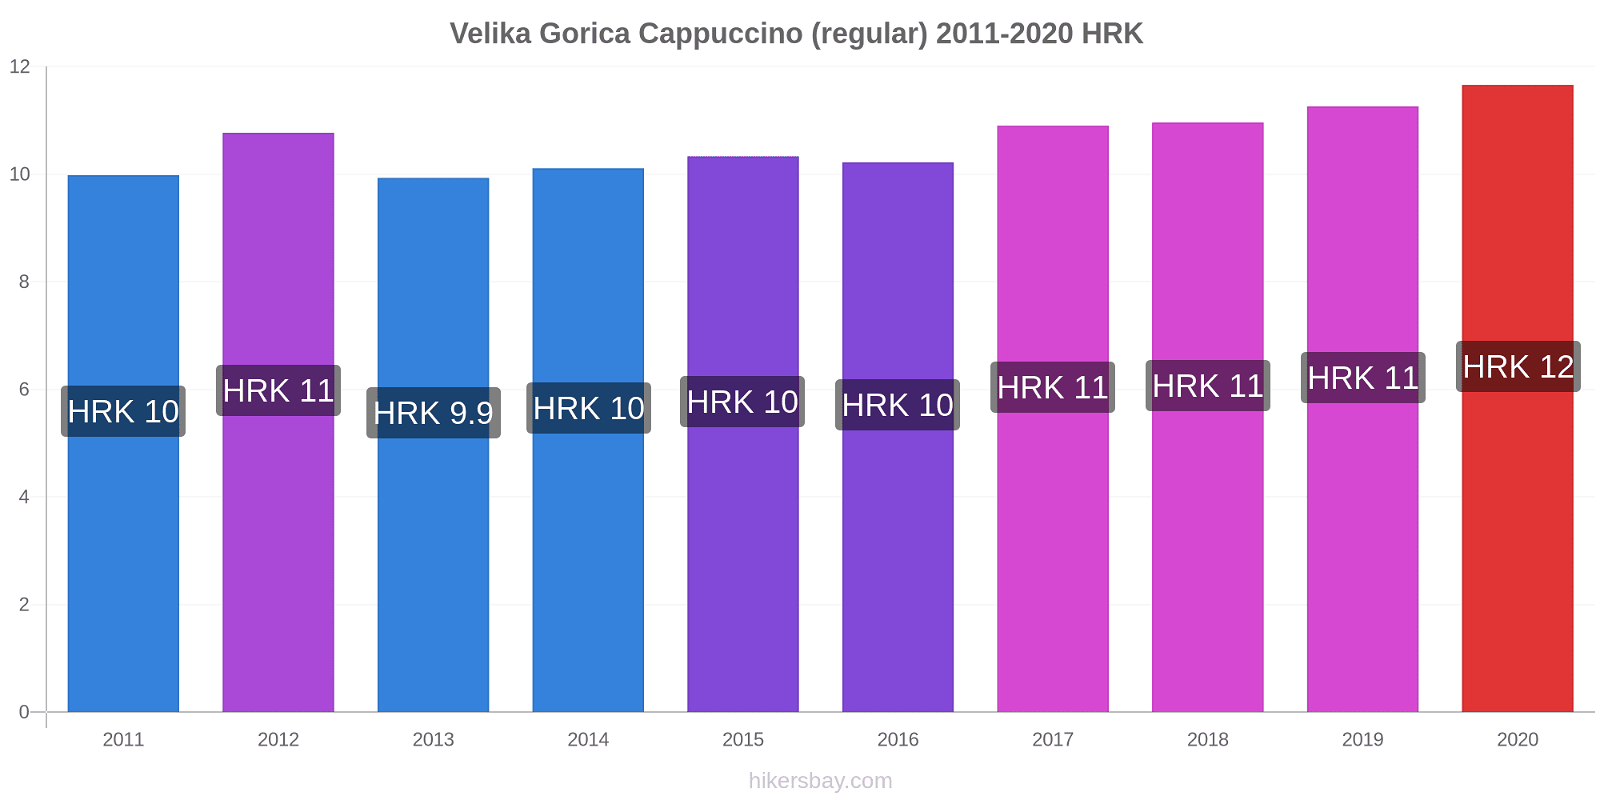 Velika Gorica price changes Cappuccino (regular) hikersbay.com